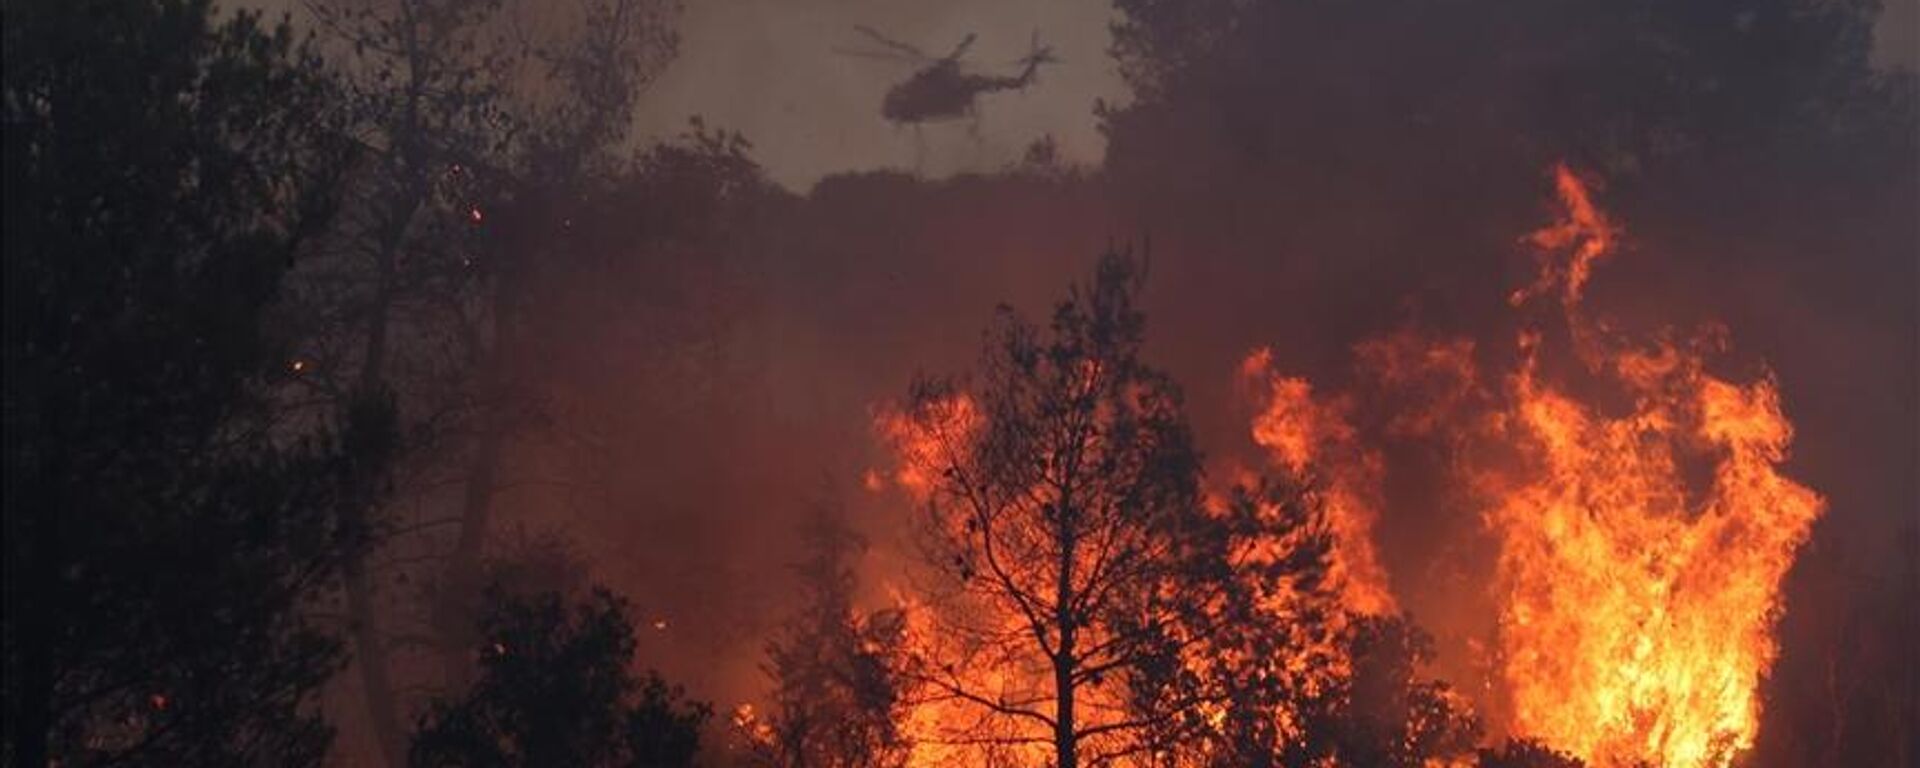 Rodos Adası'nda bir hafta önce başlayan orman yangını kontrolsüz şekilde yayılmaya devam ederken, Yunanistan'ın Korfu Adası'nda da orman yangını çıktığı bildirildi. - Sputnik Türkiye, 1920, 01.08.2023